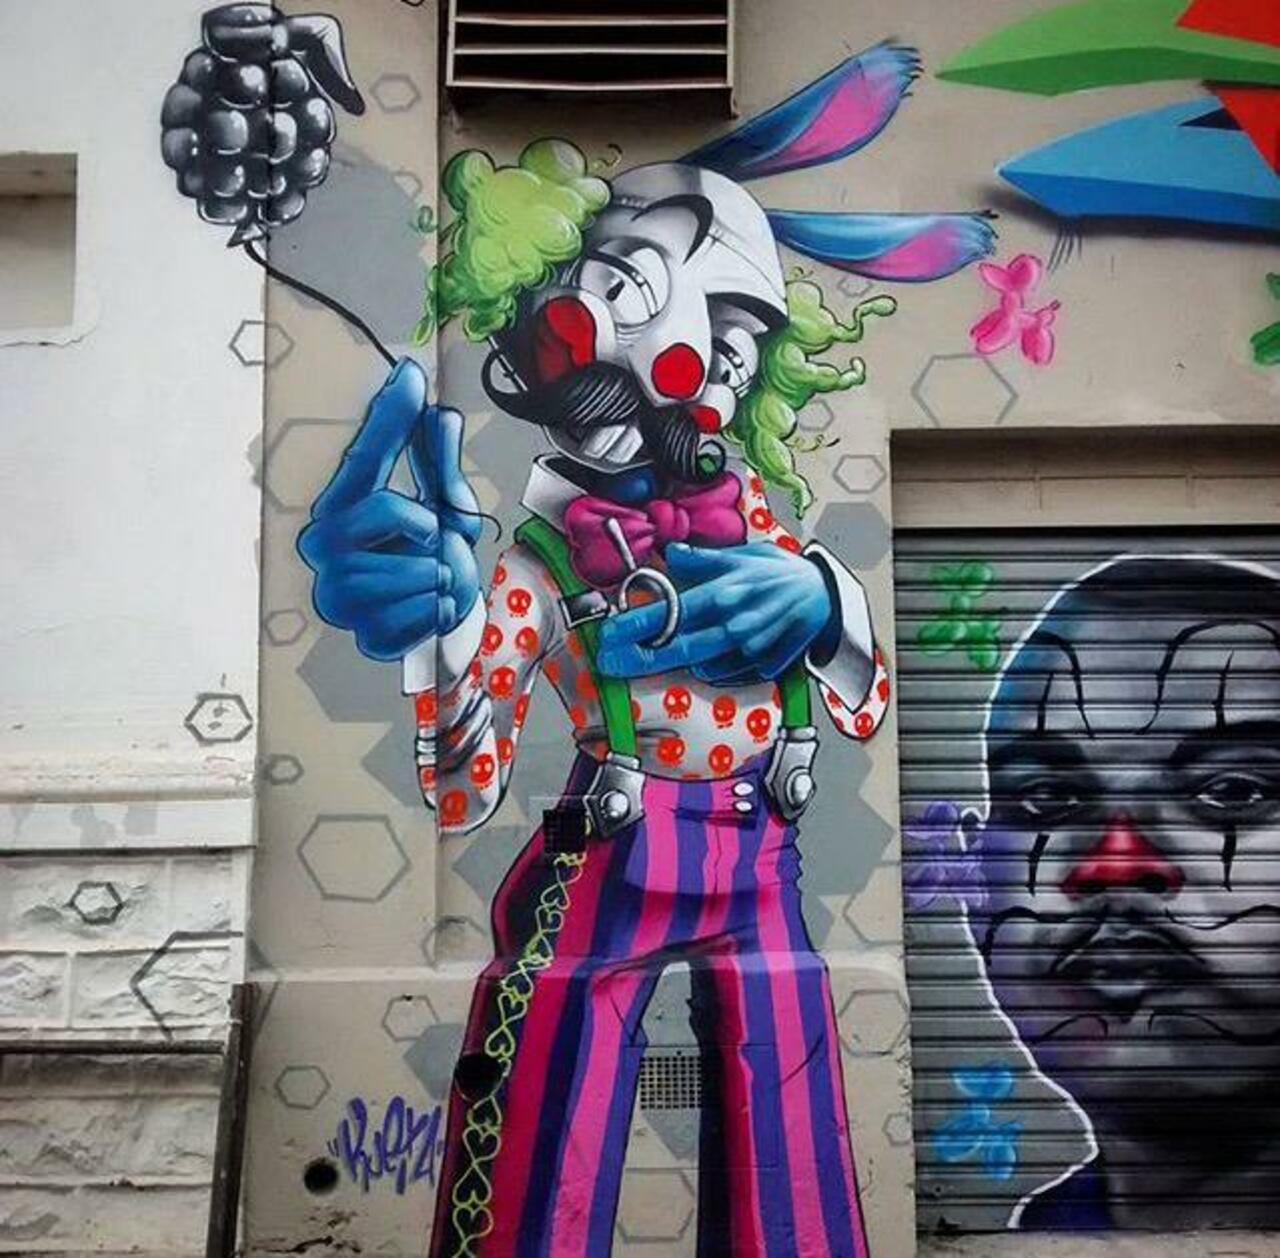 New Street Art by Karen Kueia 

#art #graffiti #mural #streetart http://t.co/TLijJt3KhJ